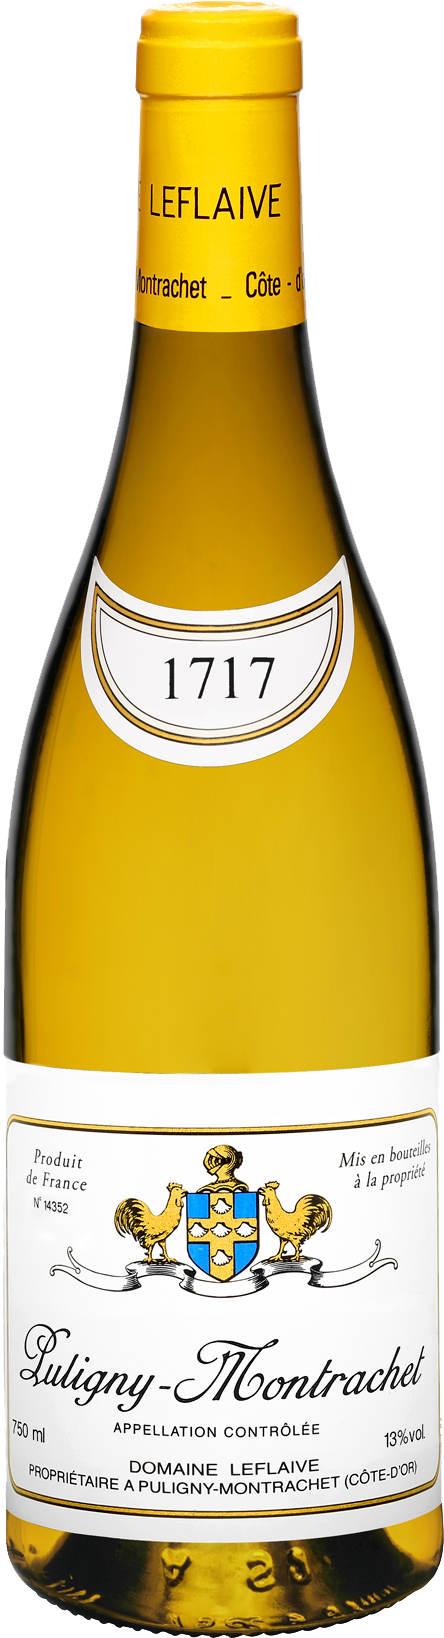 Bottle shot of 2011 Puligny Montrachet